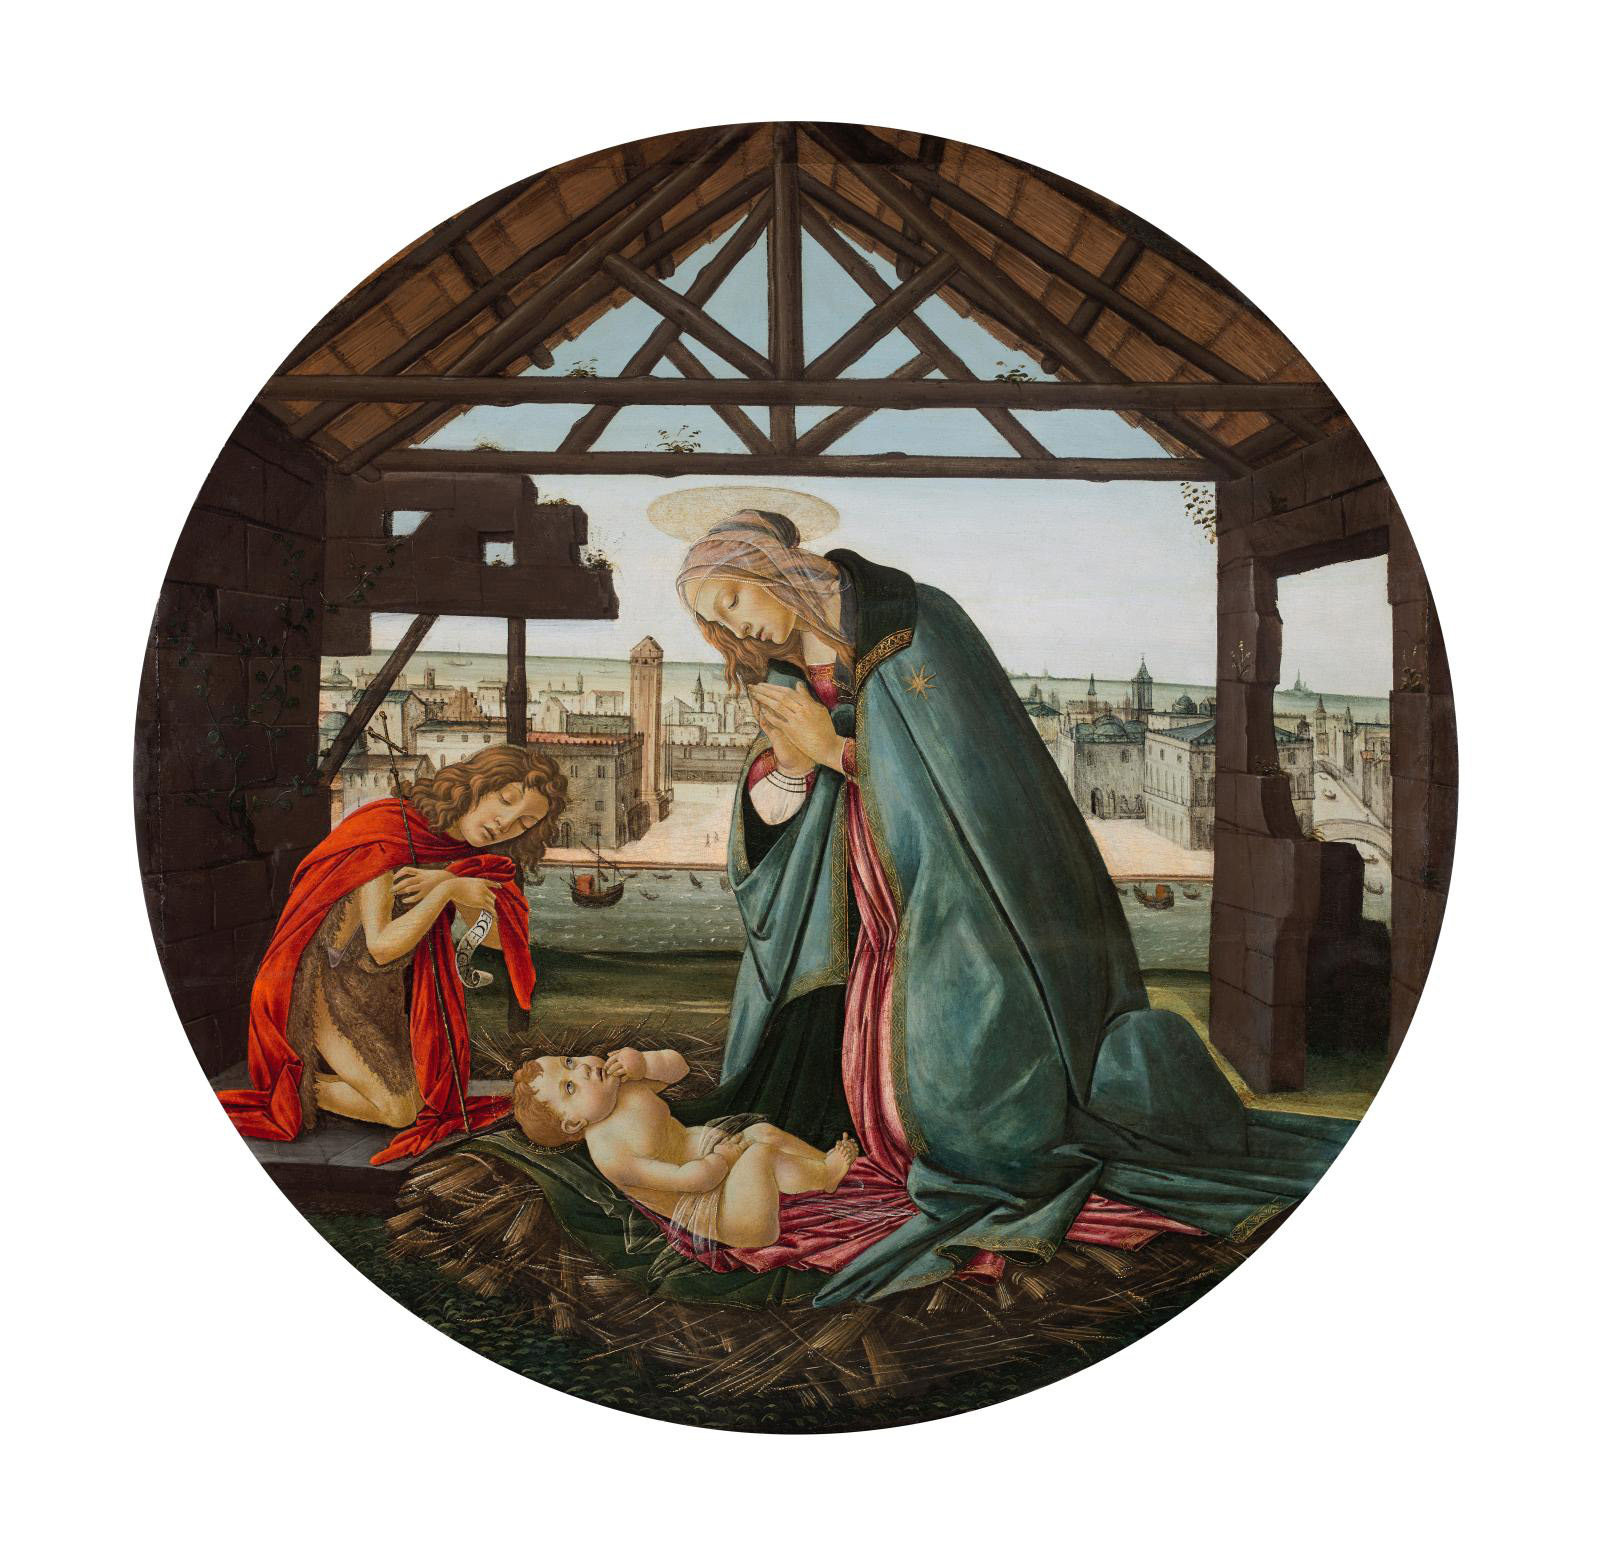 Parisian Botticelli Exhibition at Jacquemart-André Museum Reveals Secrets